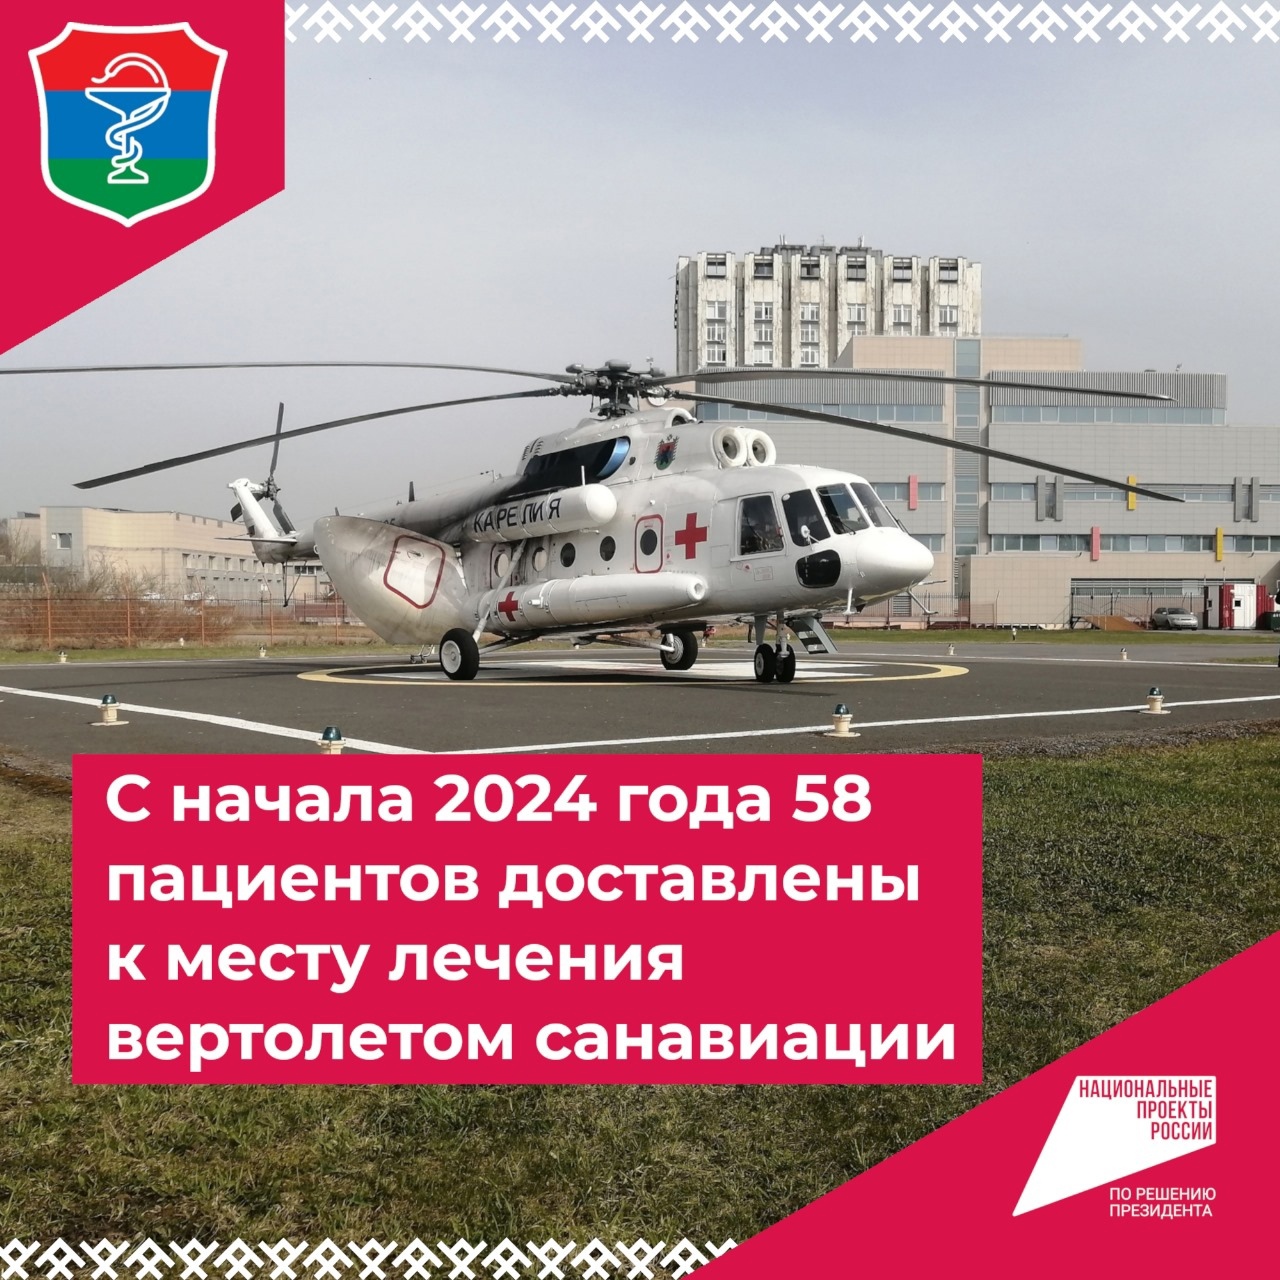 Карельский вертолет санавиации с начала года 42 раза вылетал на помощь пострадавшим